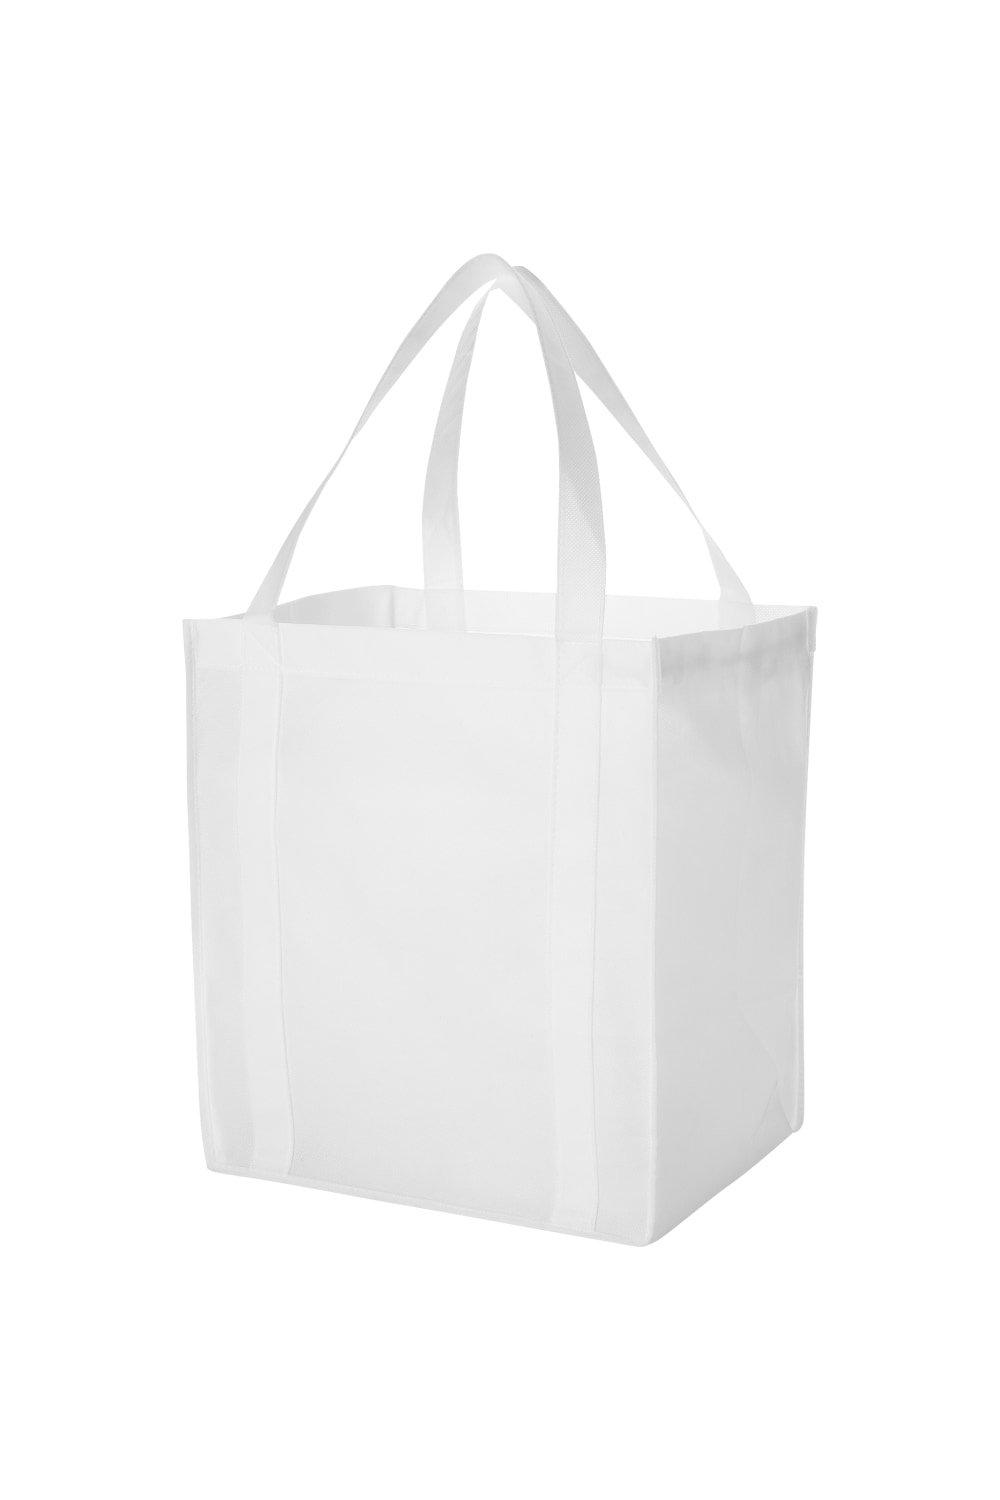 Нетканая продуктовая сумка Liberty (2 шт.) Bullet, белый нетканая сумка холодильник для ланчей triangle